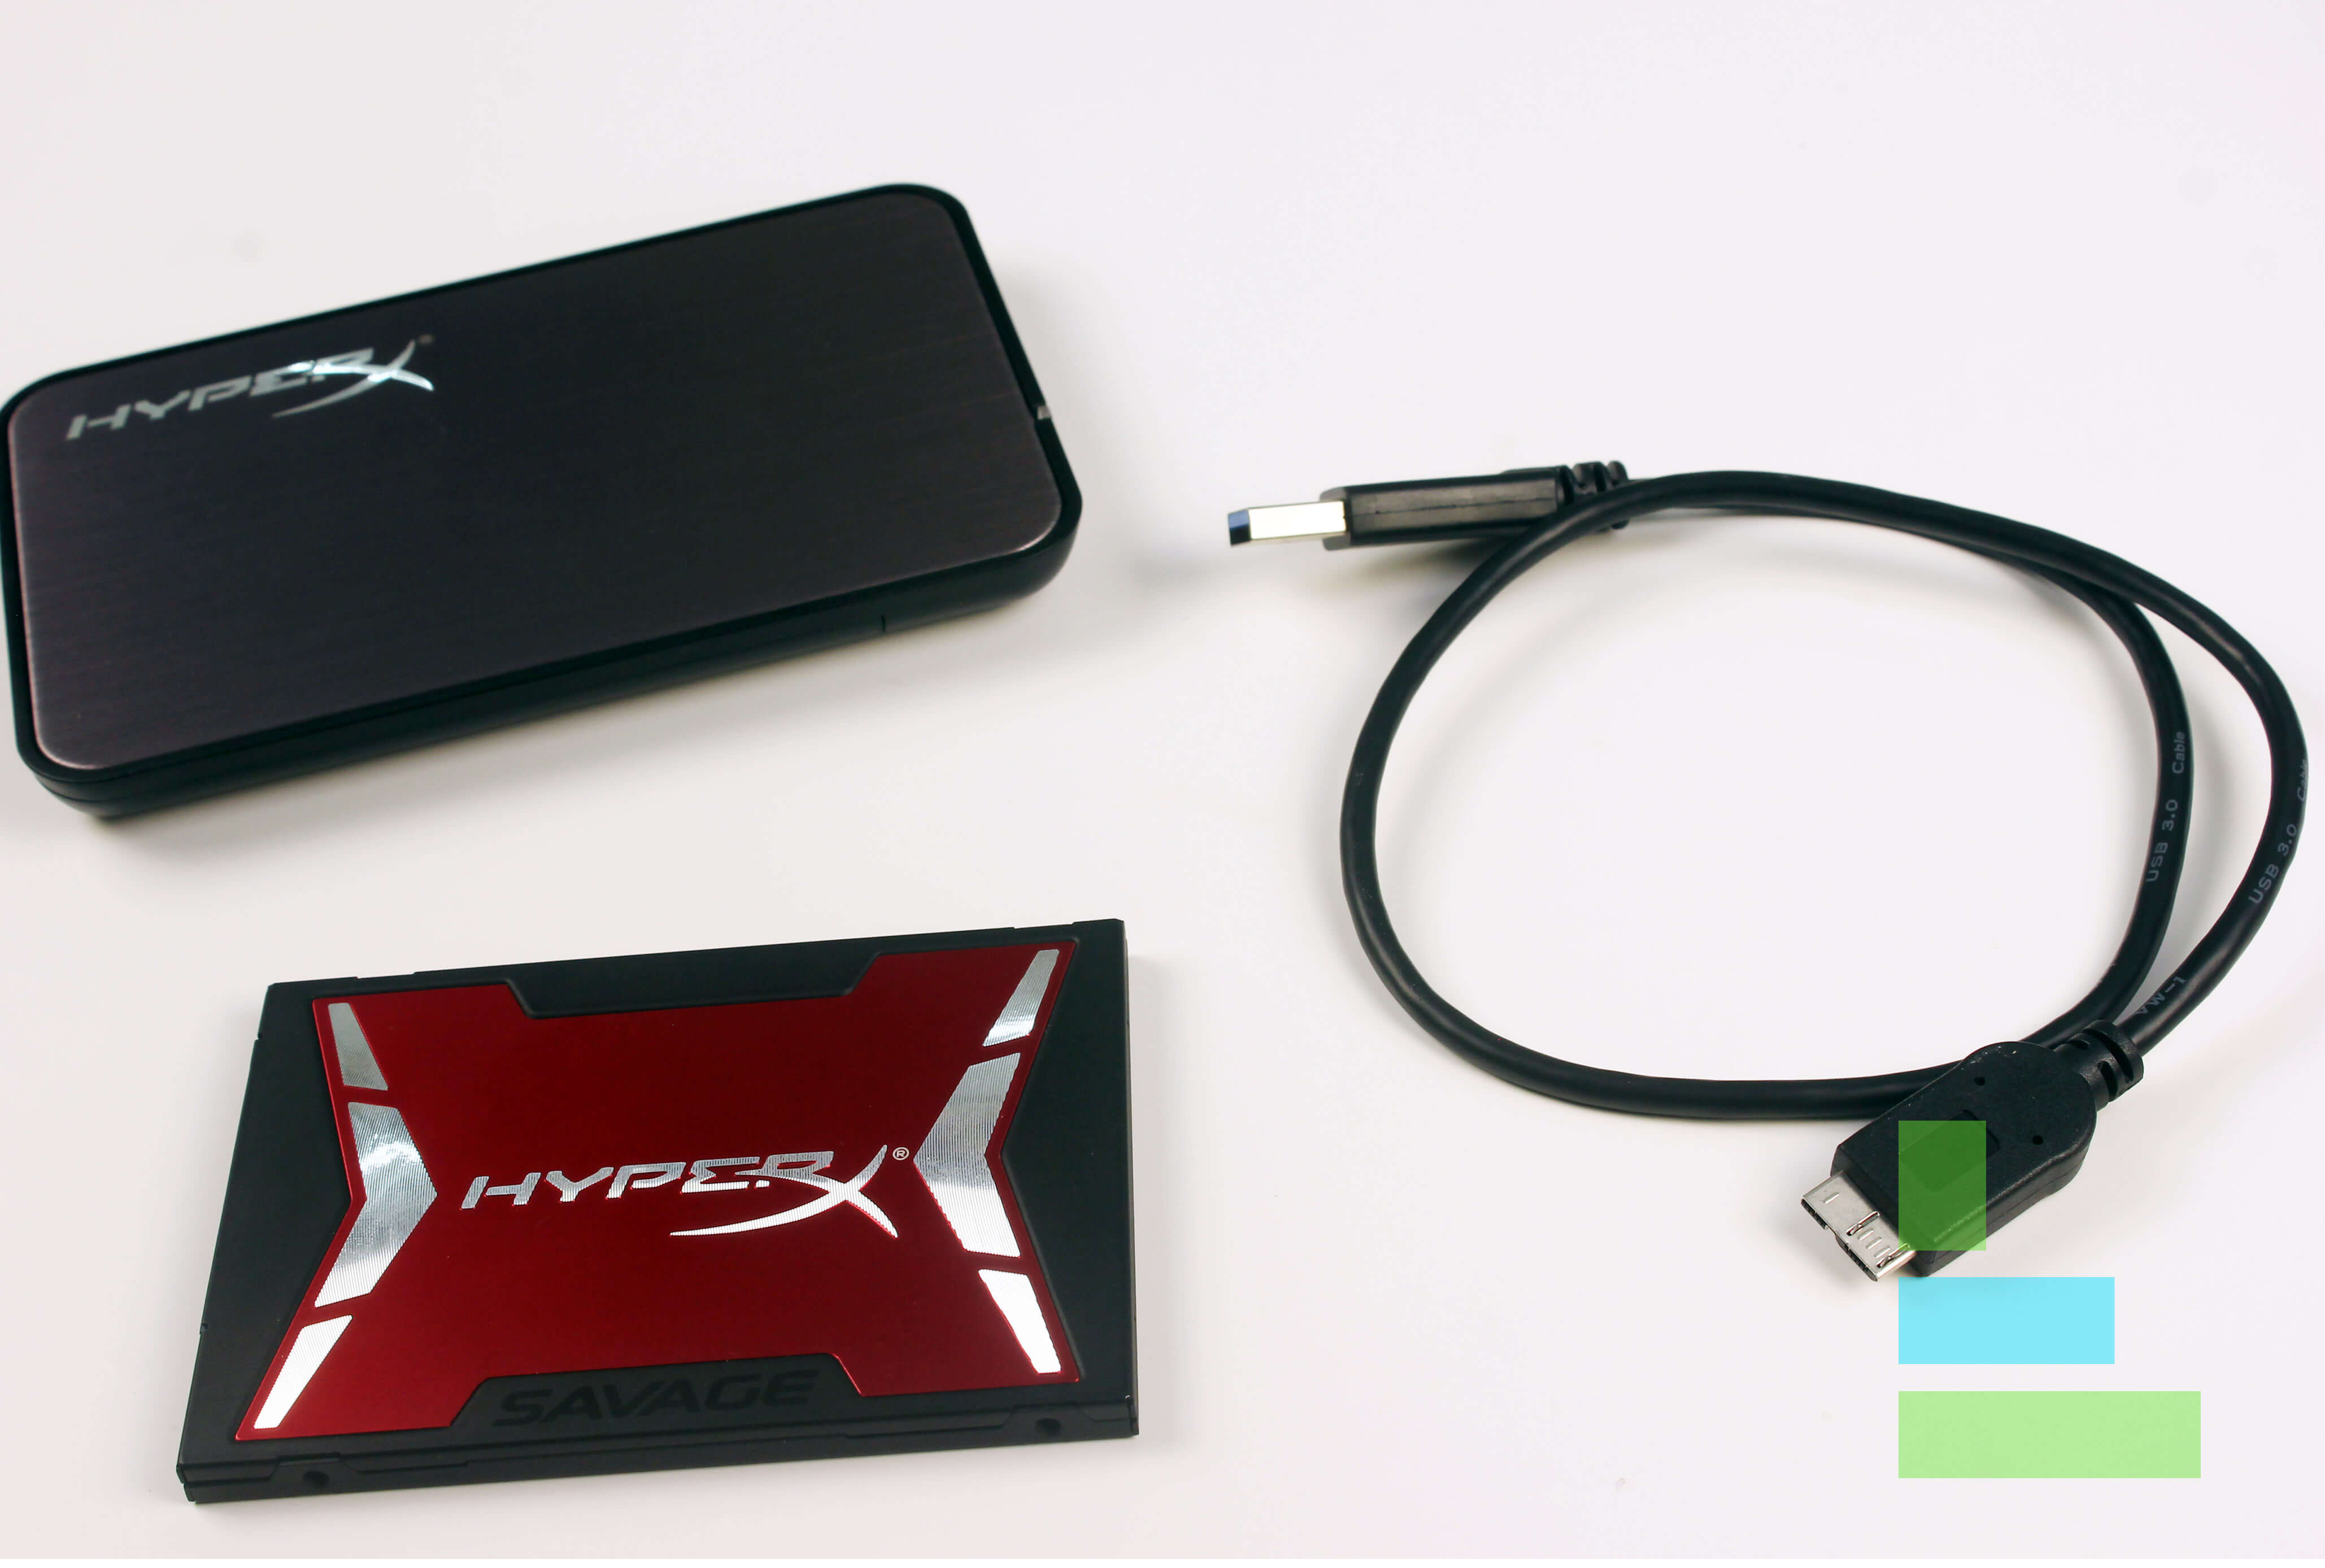 Kingston HyperX Savage SSD Kit Review